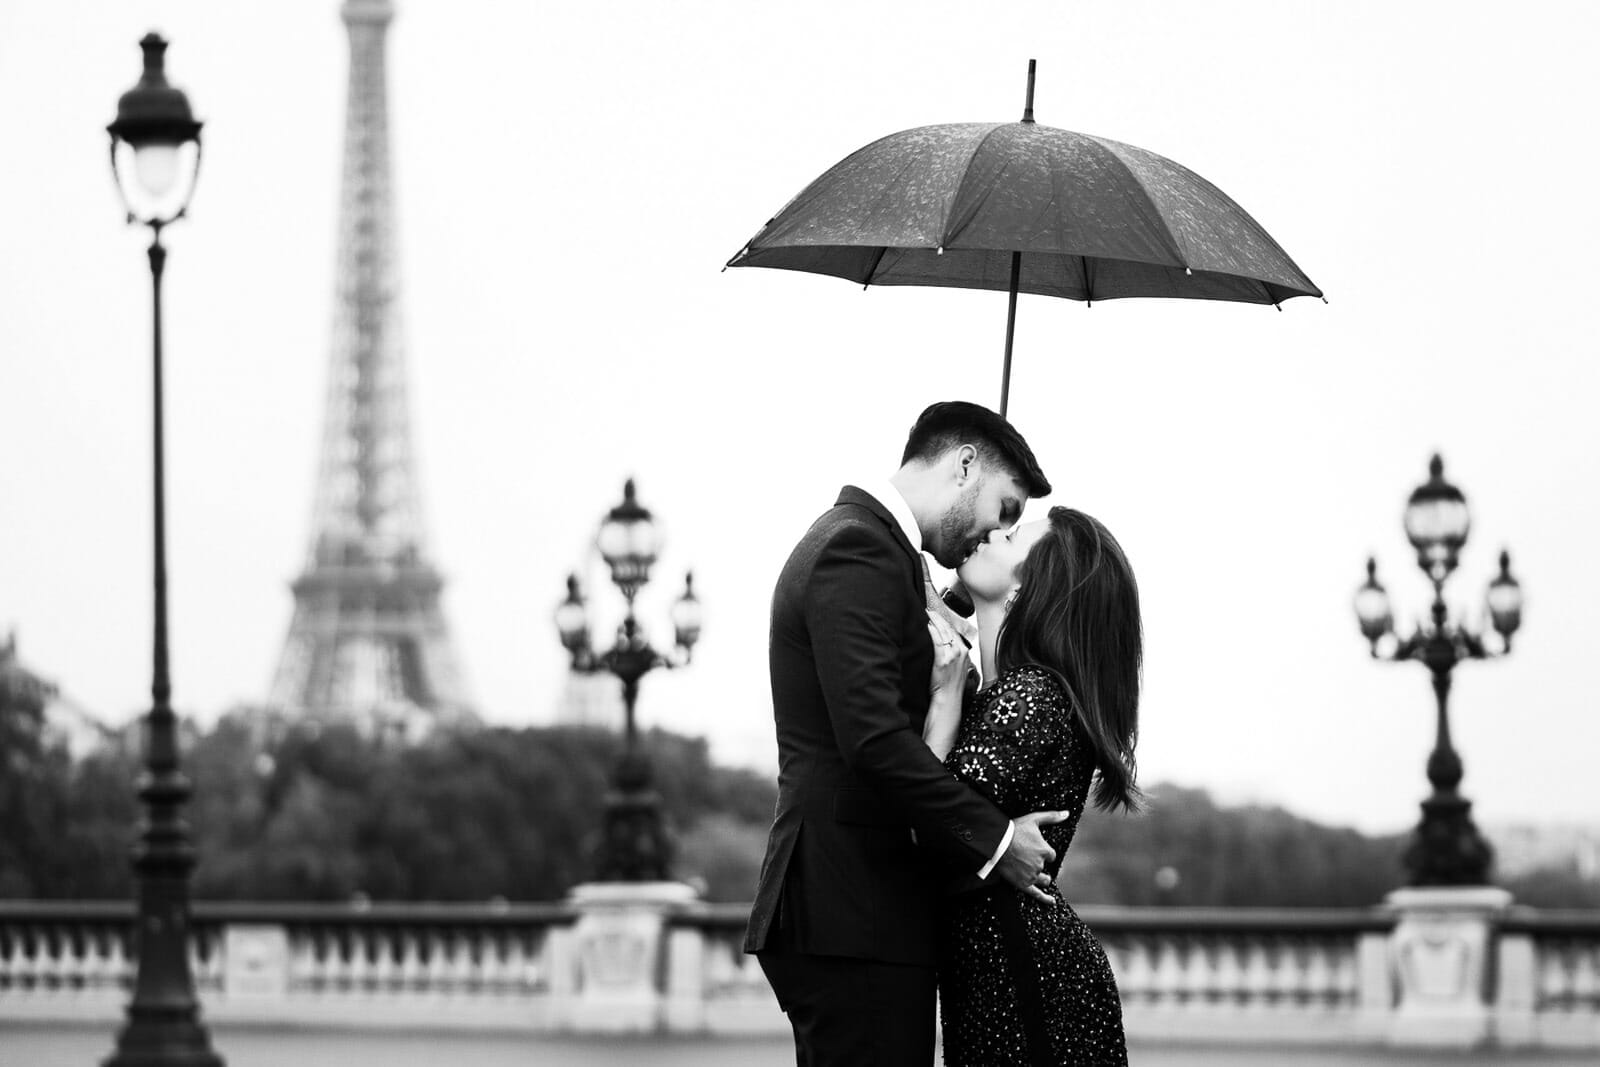 Romantic Eiffel Tower photoshoot in the rain on Alexander III